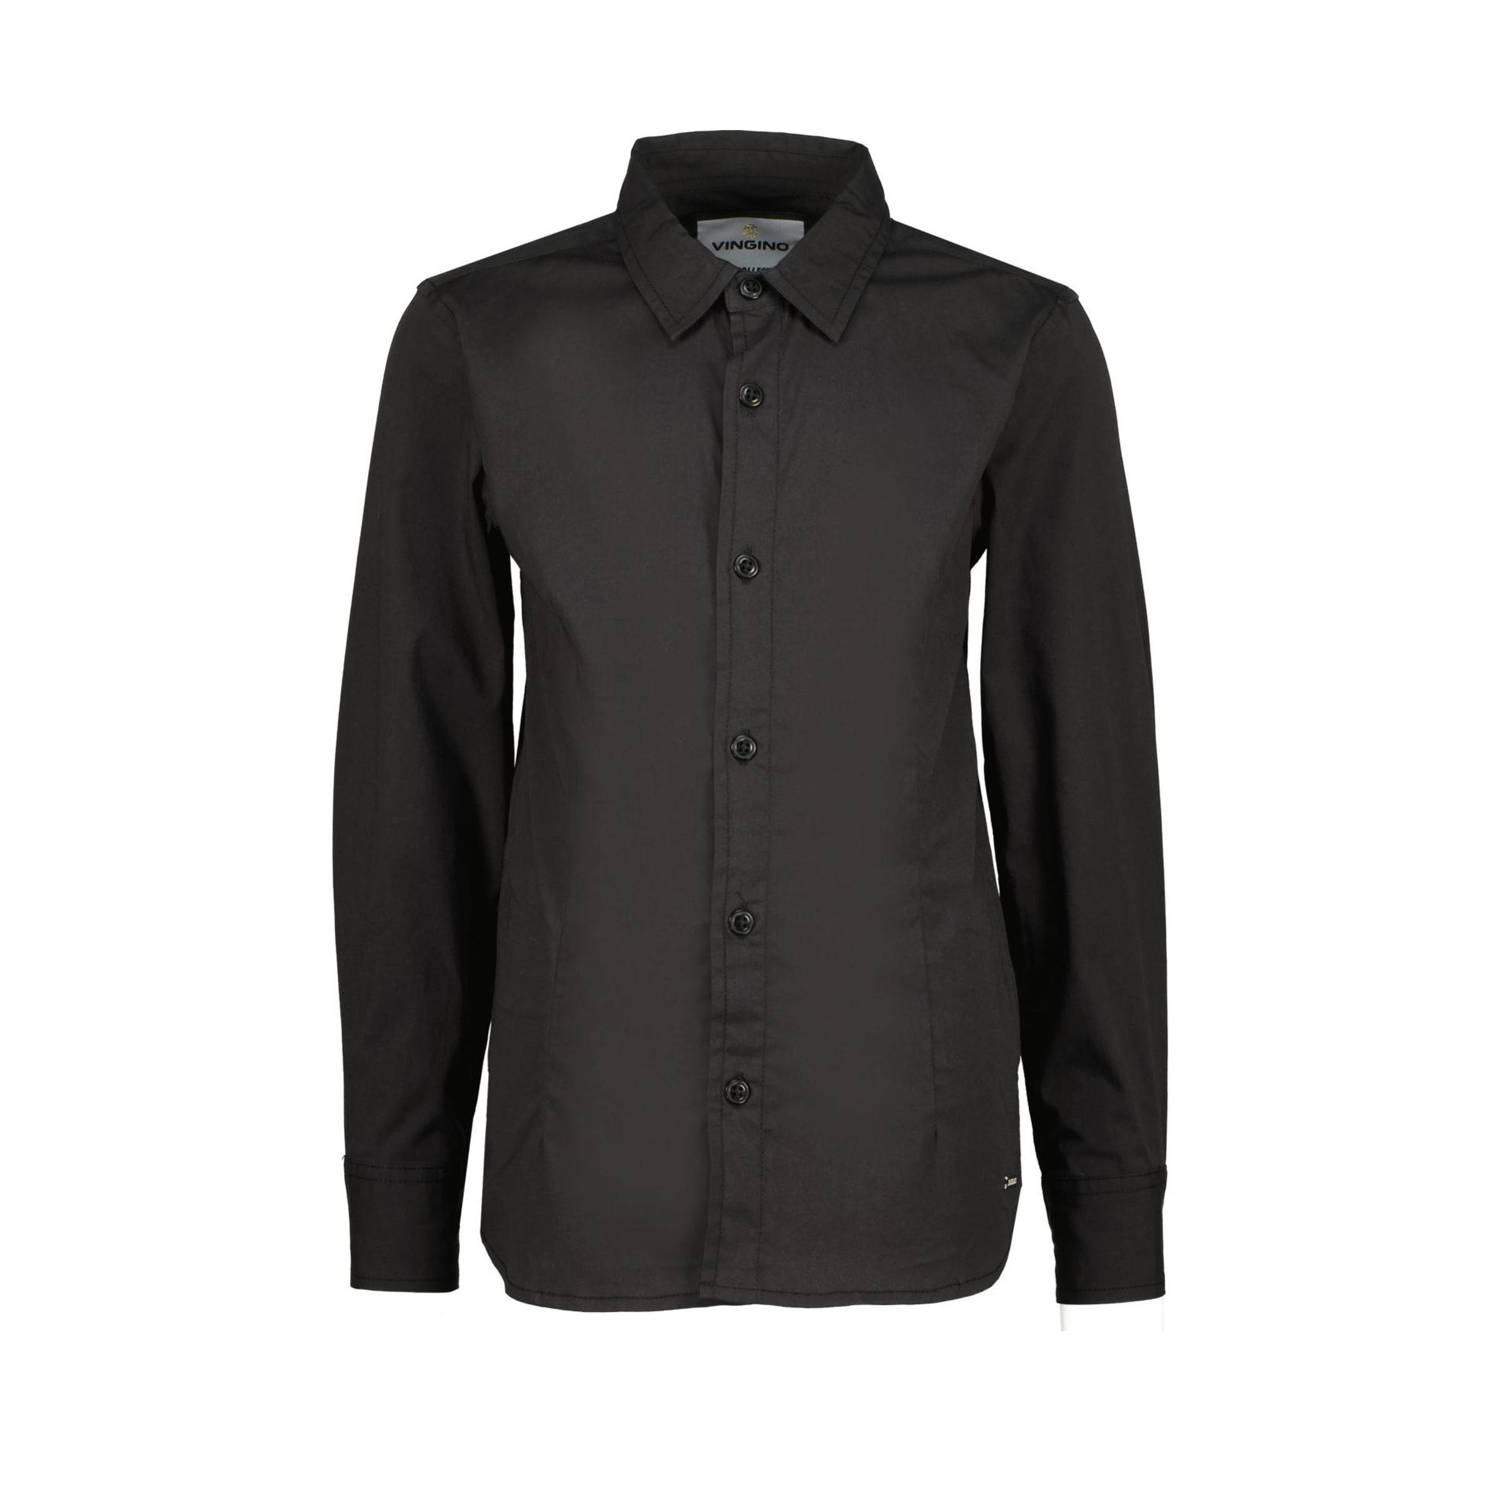 VINGINO overhemd Lasic zwart Jongens Stretchkatoen Klassieke kraag 116